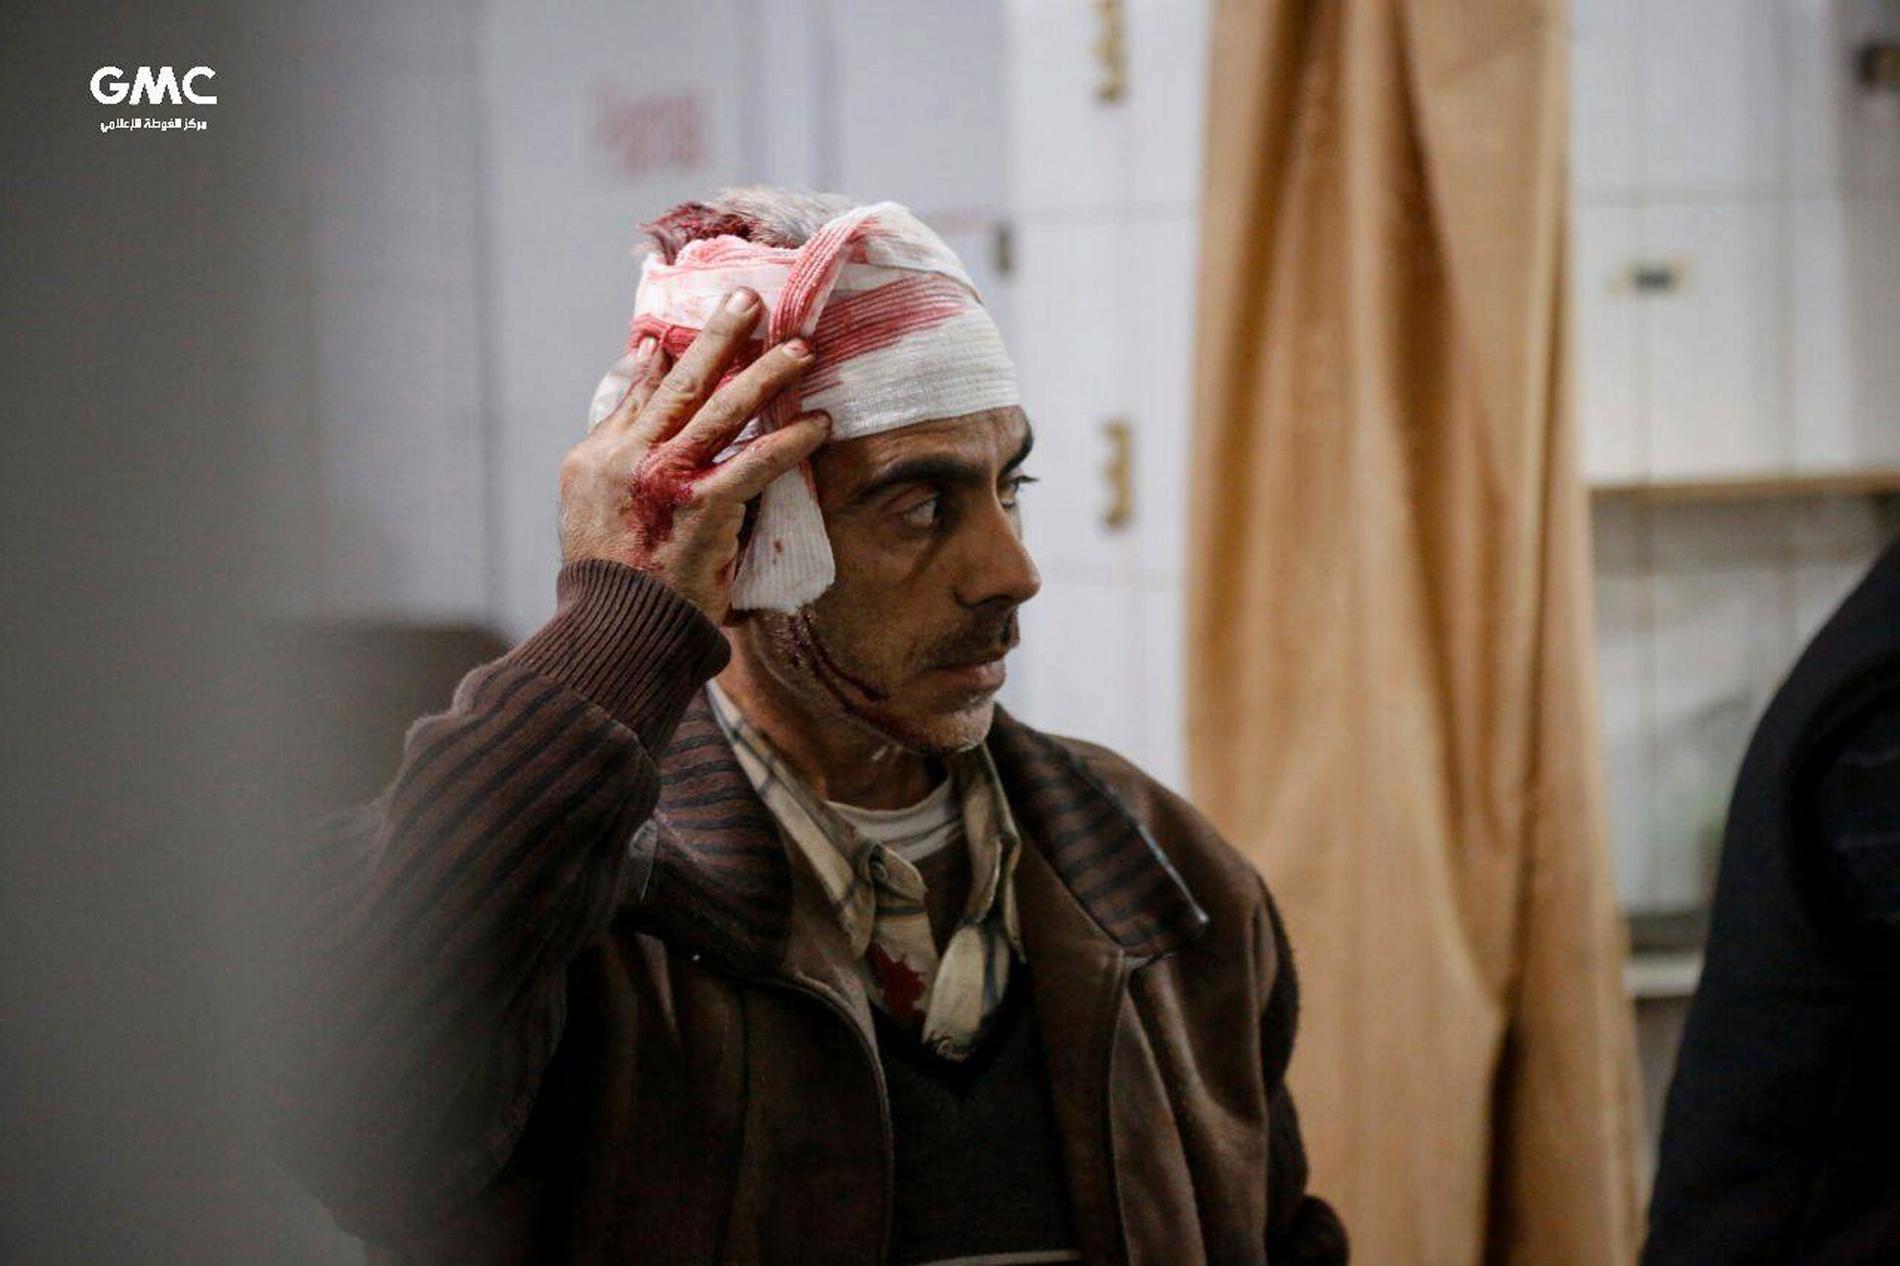 En man väntar på behandling på en provisorisk klinik i östra Ghouta i Syrien. Bilden kommer från det regimkritiska aktivistnätverket Ghouta Media Center och distribueras av nyhetsbyrån AP.